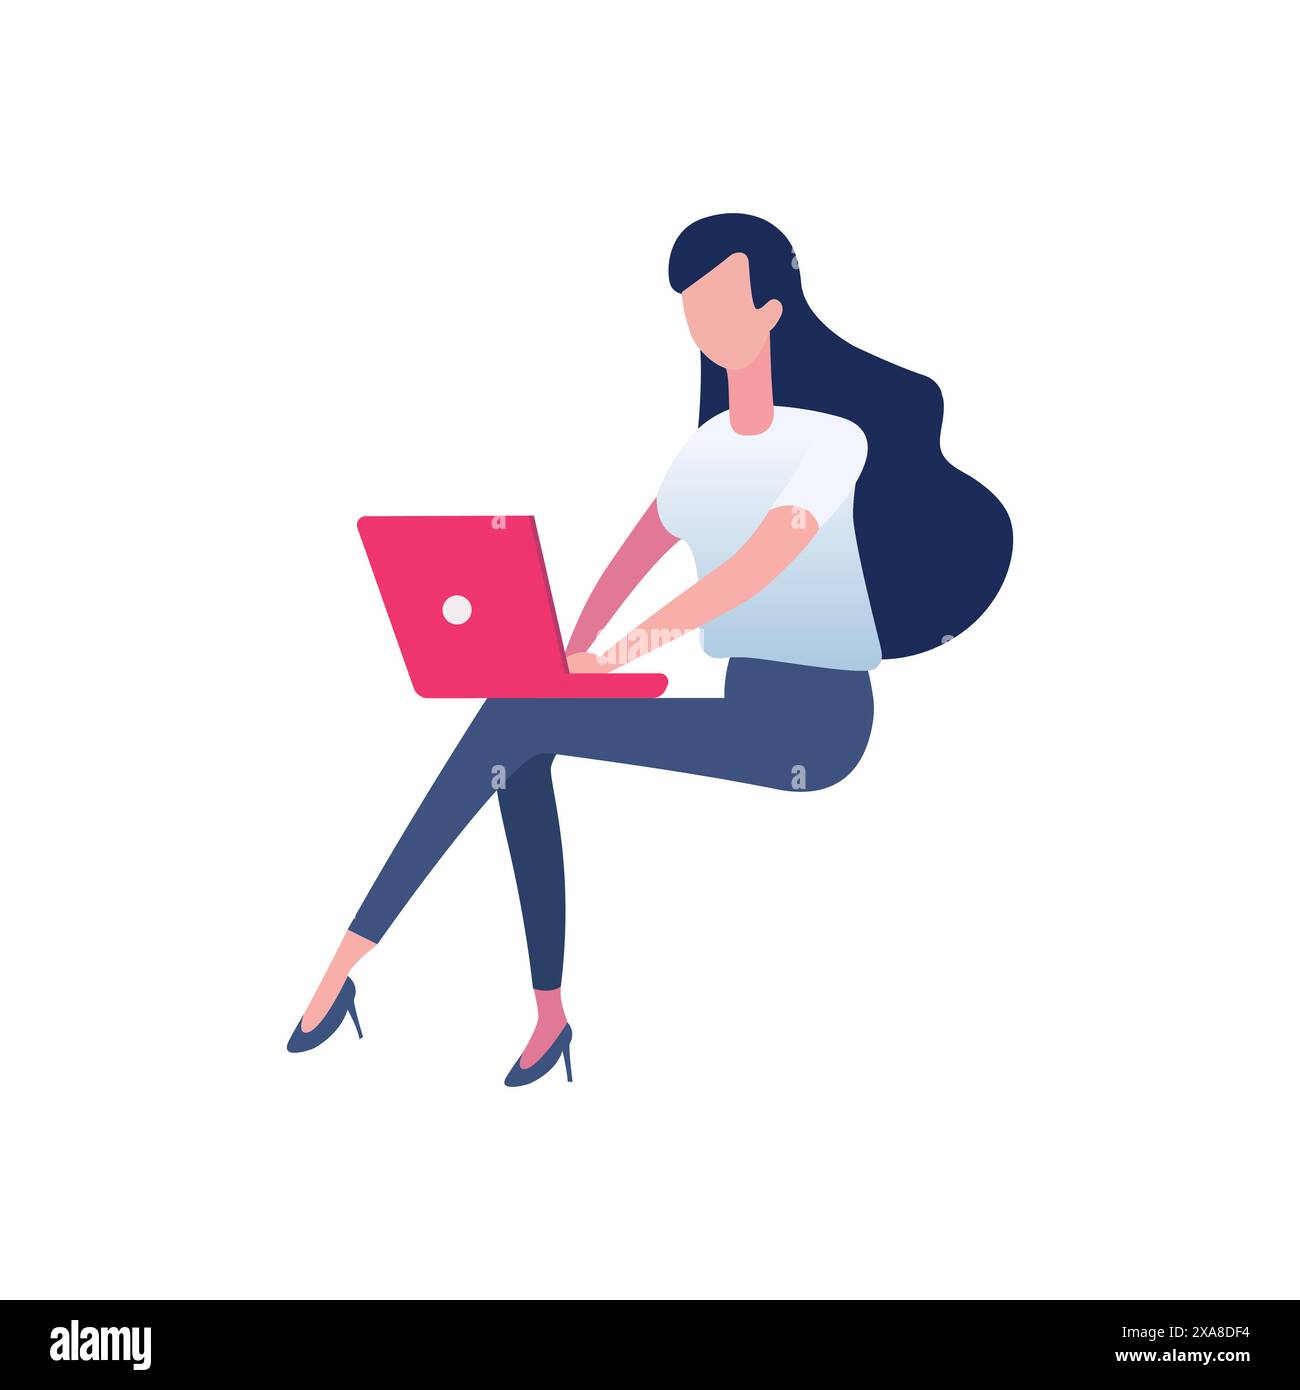 Femme assise et travaillant isolée sur fond blanc. Illustration conceptuelle pour le travail, les études, l'éducation, le travail à domicile. Illustration de Vecteur